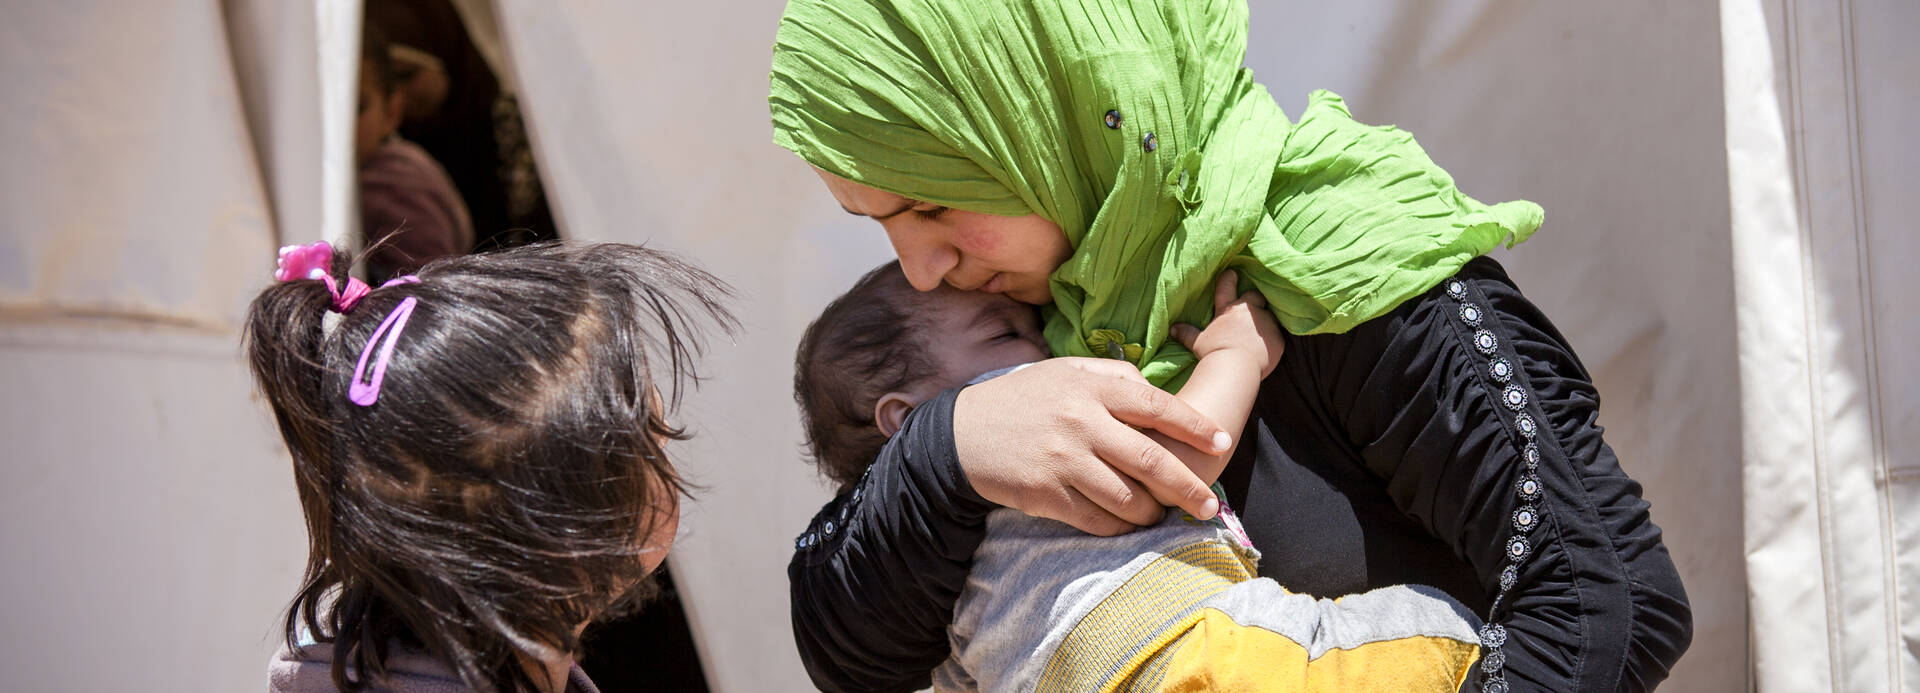 Im Libanon hält eine Frau ihr Kind fest in den Armen.